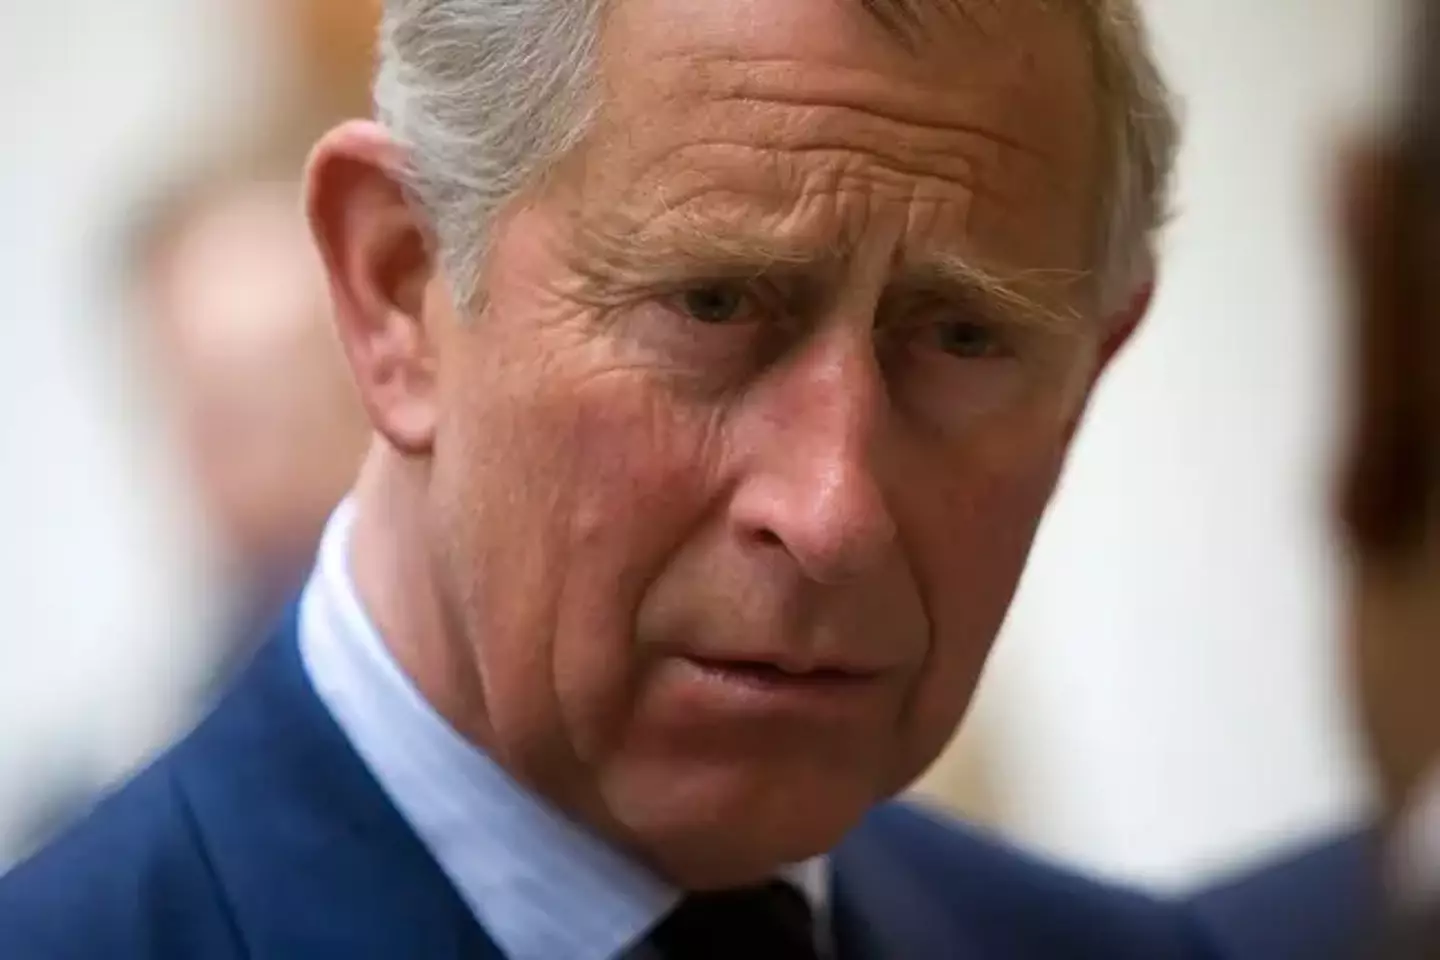 Prince Charles becomes King Charles.